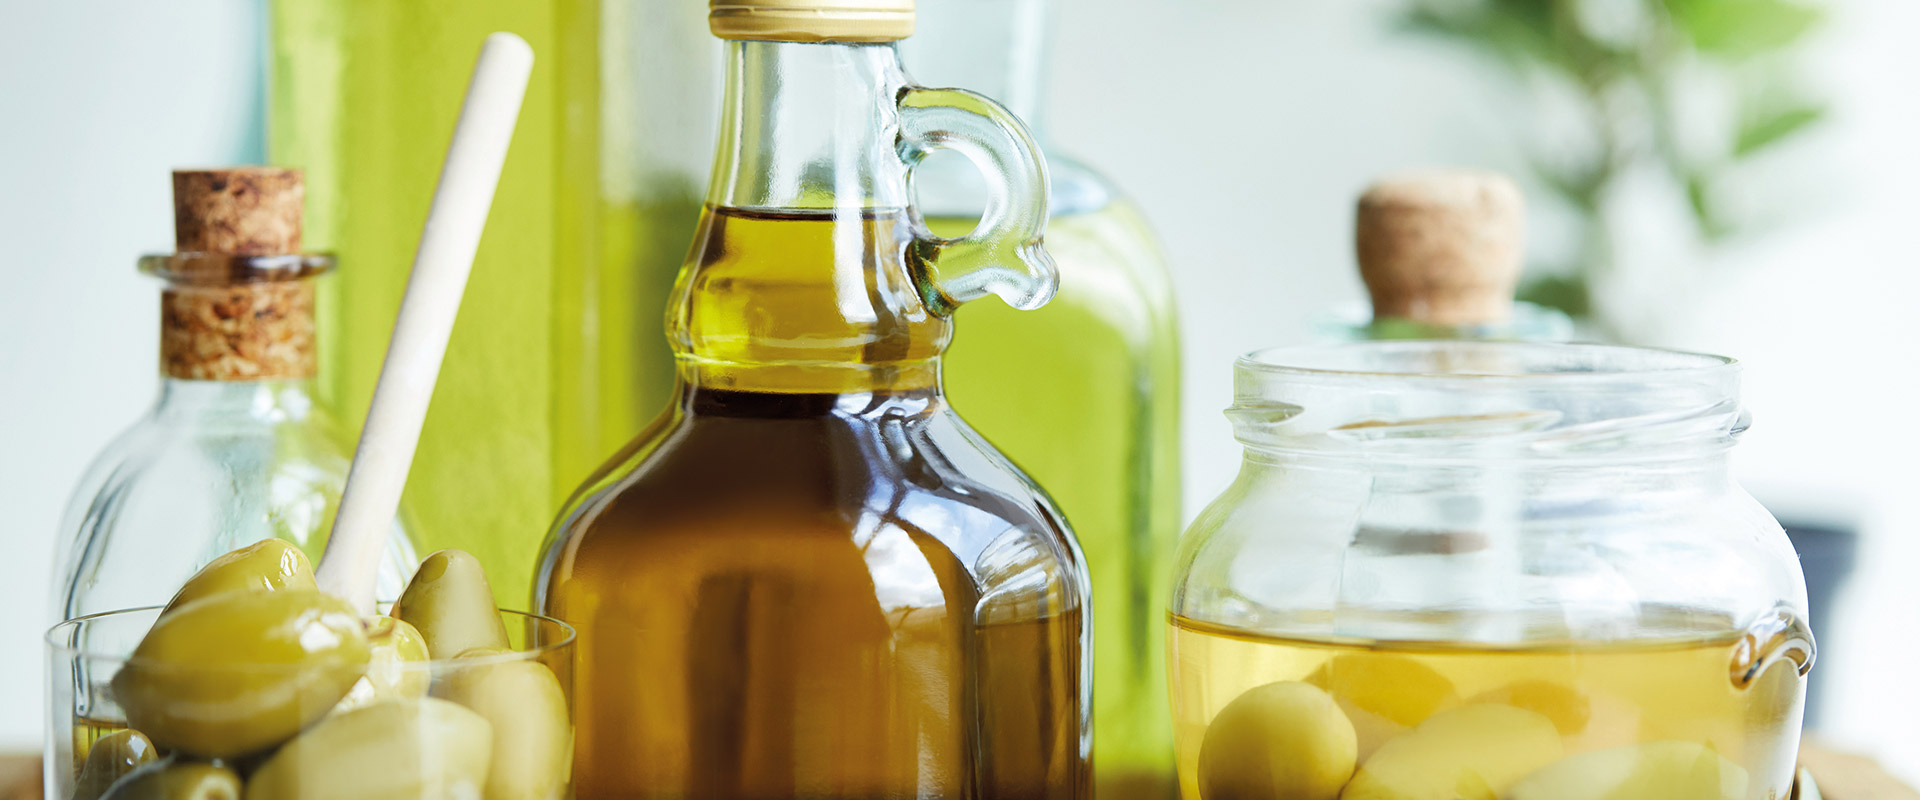 Conservazione olio di oliva – Fratelli Carli